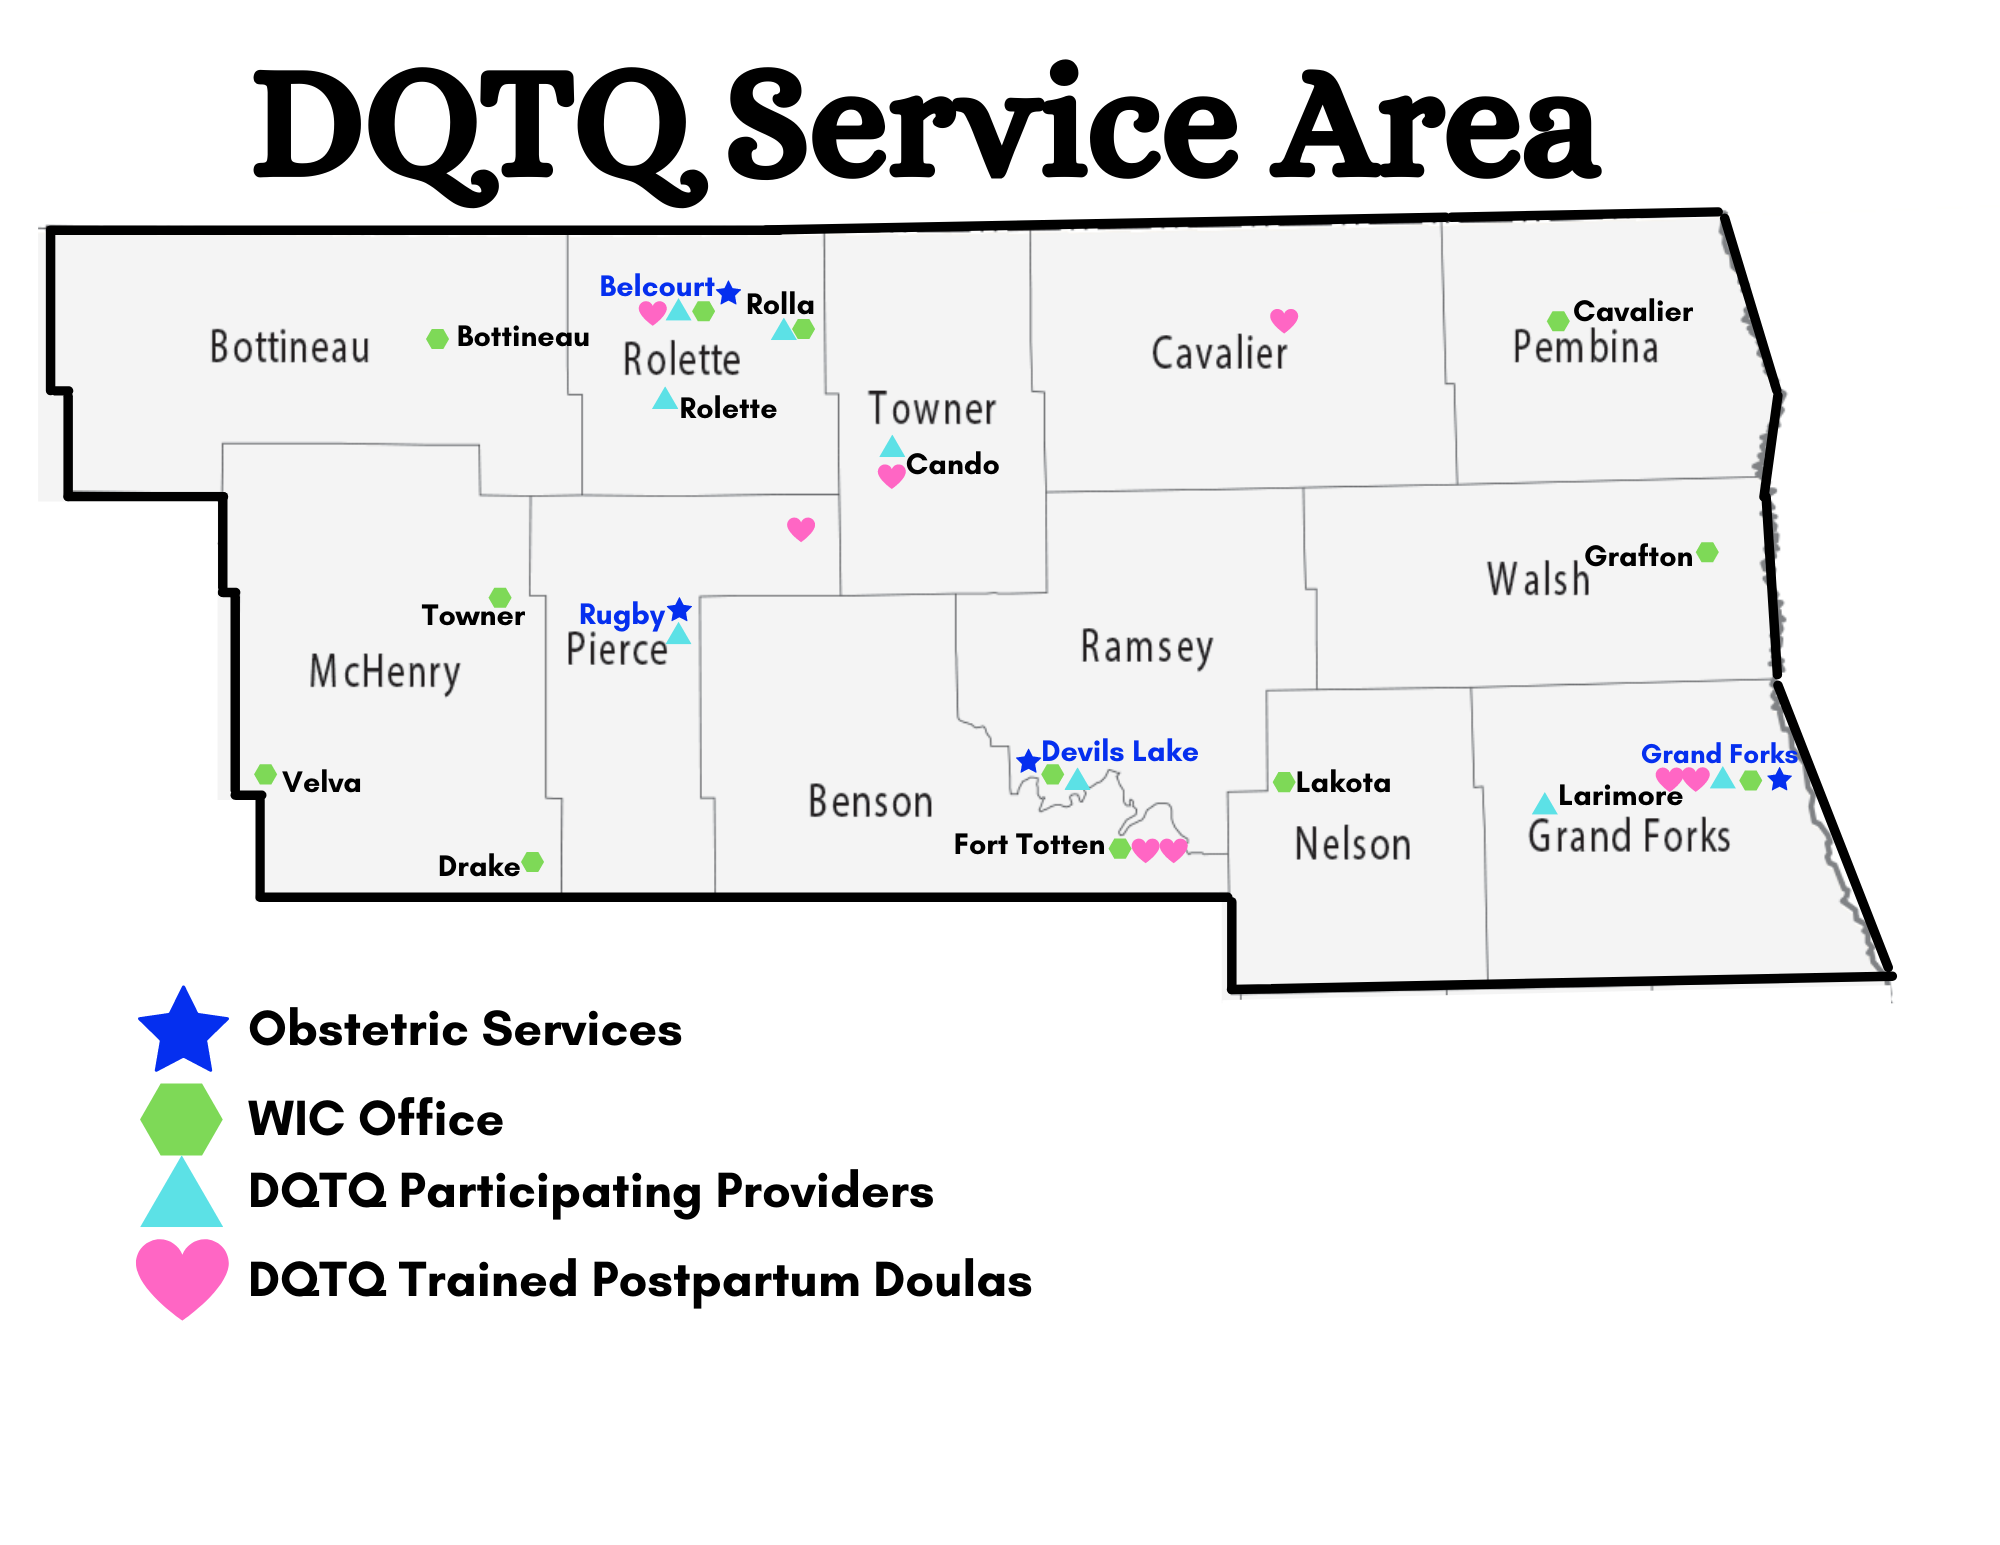 Updated DQTQ Service Area